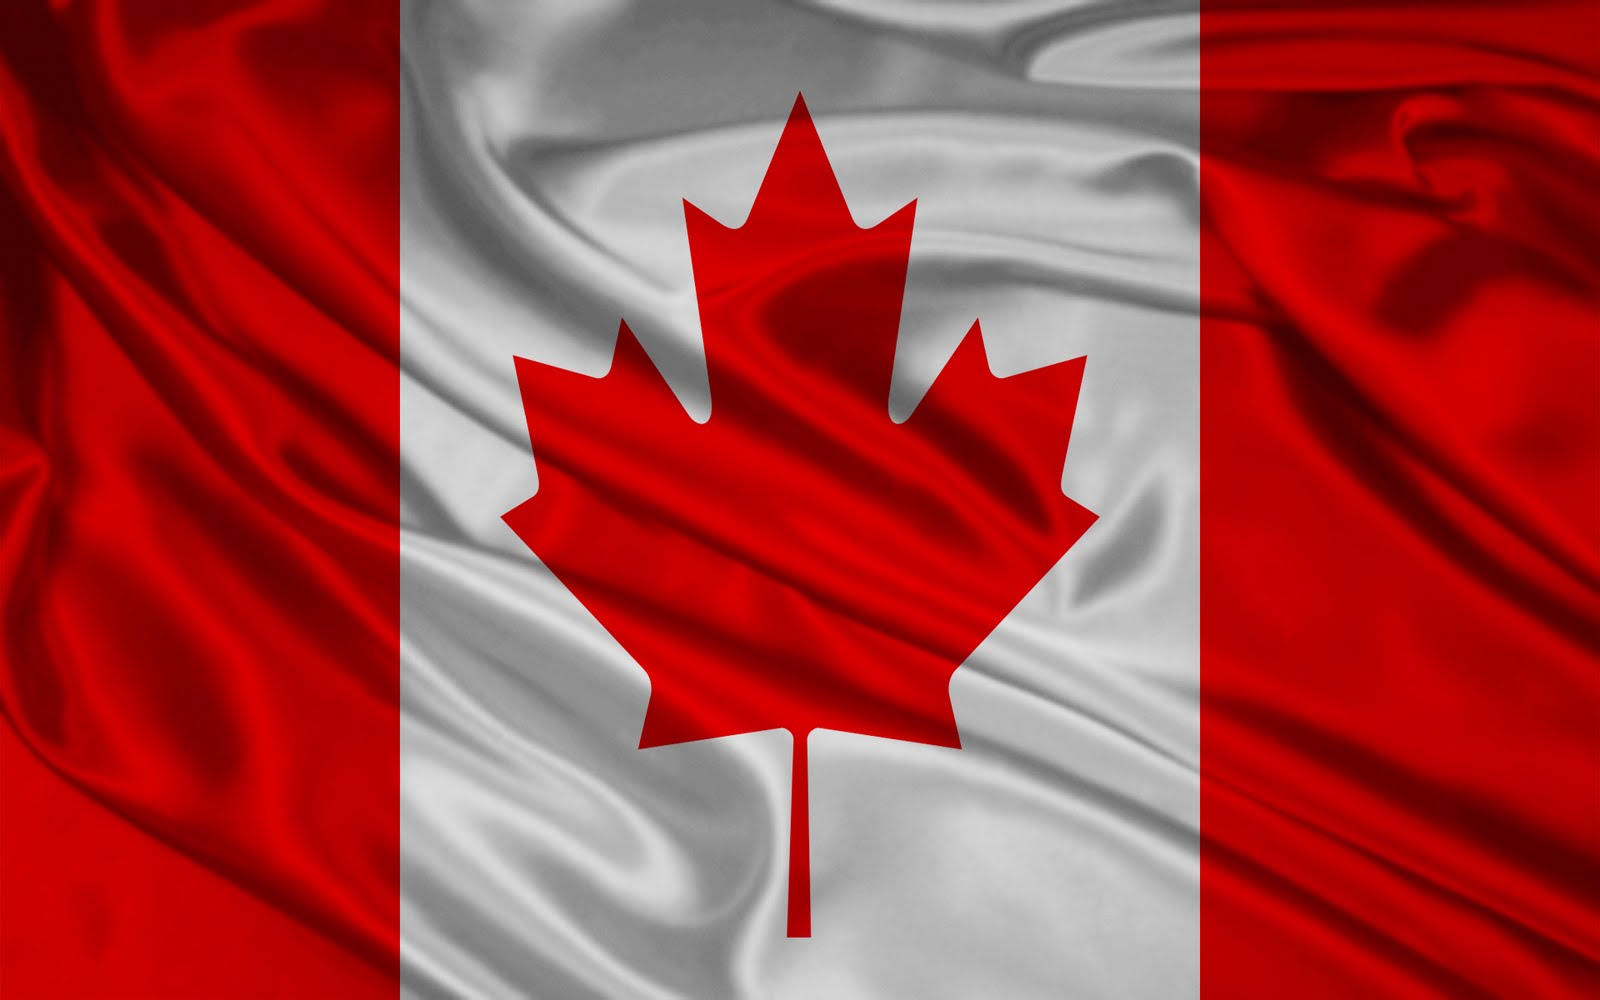 http://4.bp.blogspot.com/-6vrbMzMgUZY/Tg5sSsEMQ_I/AAAAAAAABes/kFAY2z_WVwg/s1600/Canada-Flag-Wallpapers-1920x1200.jpg